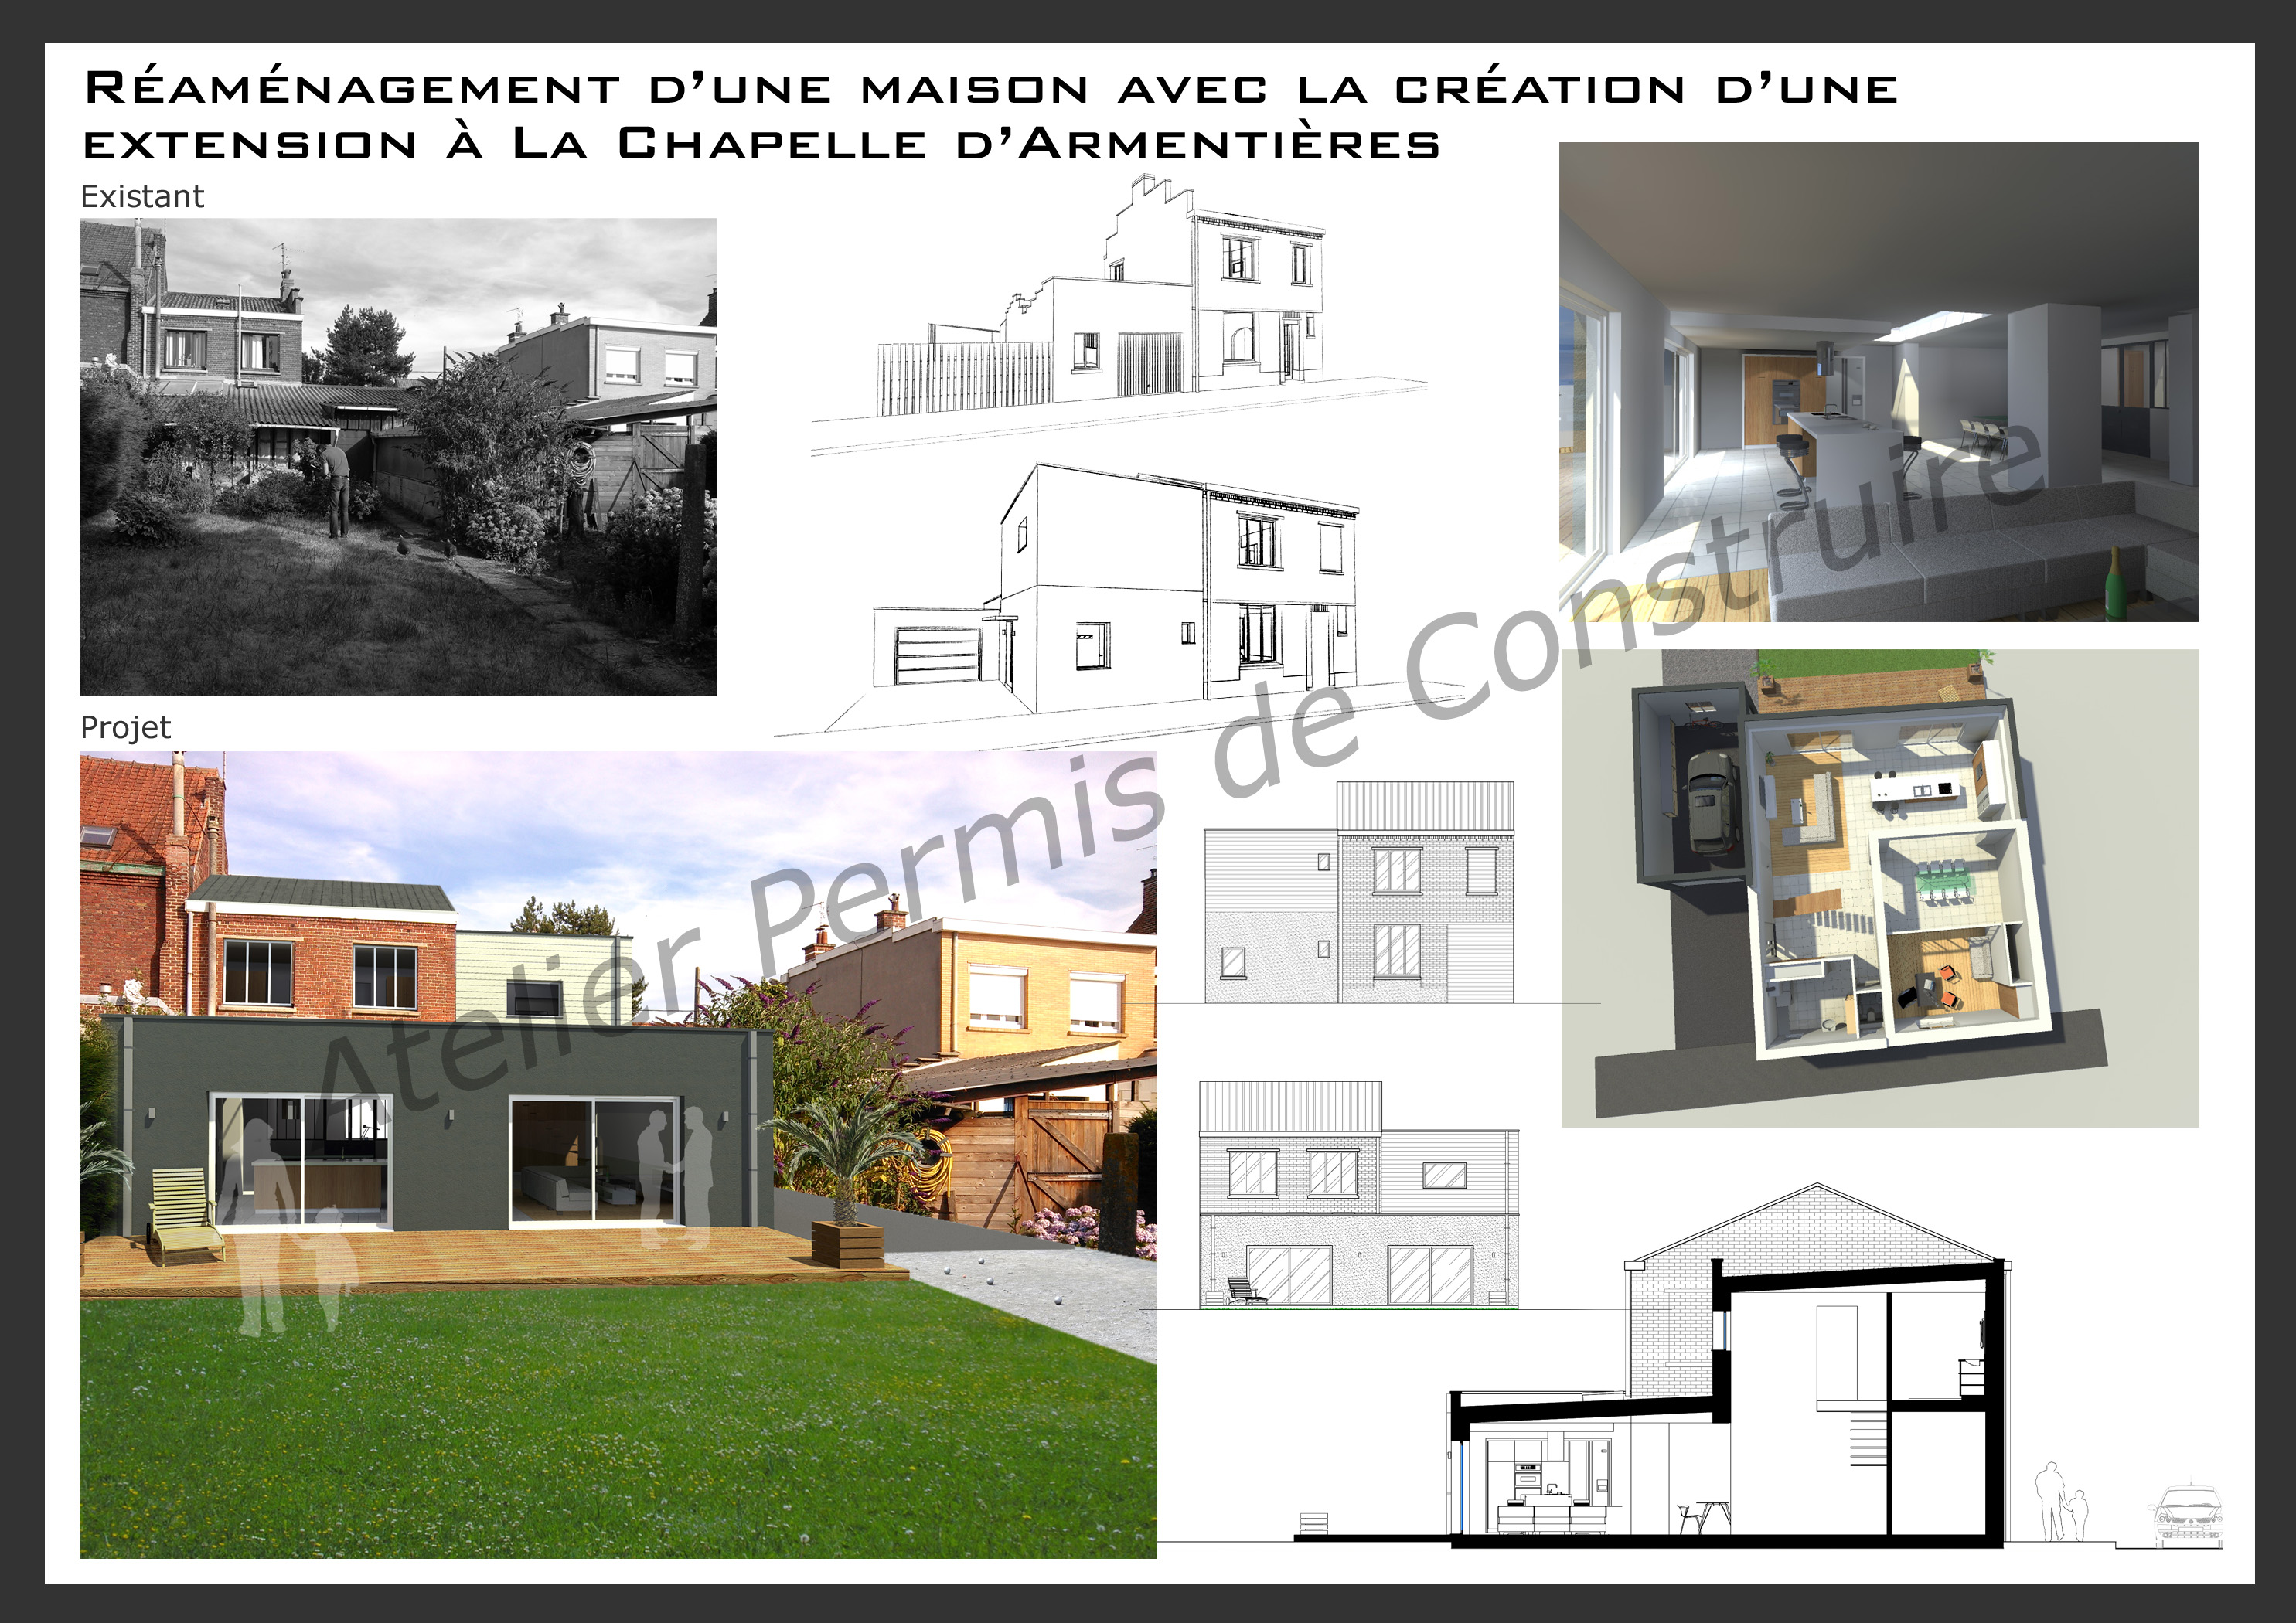 15.27 Atelier Permis de construire extension maison nord la chapelle d'Armentières